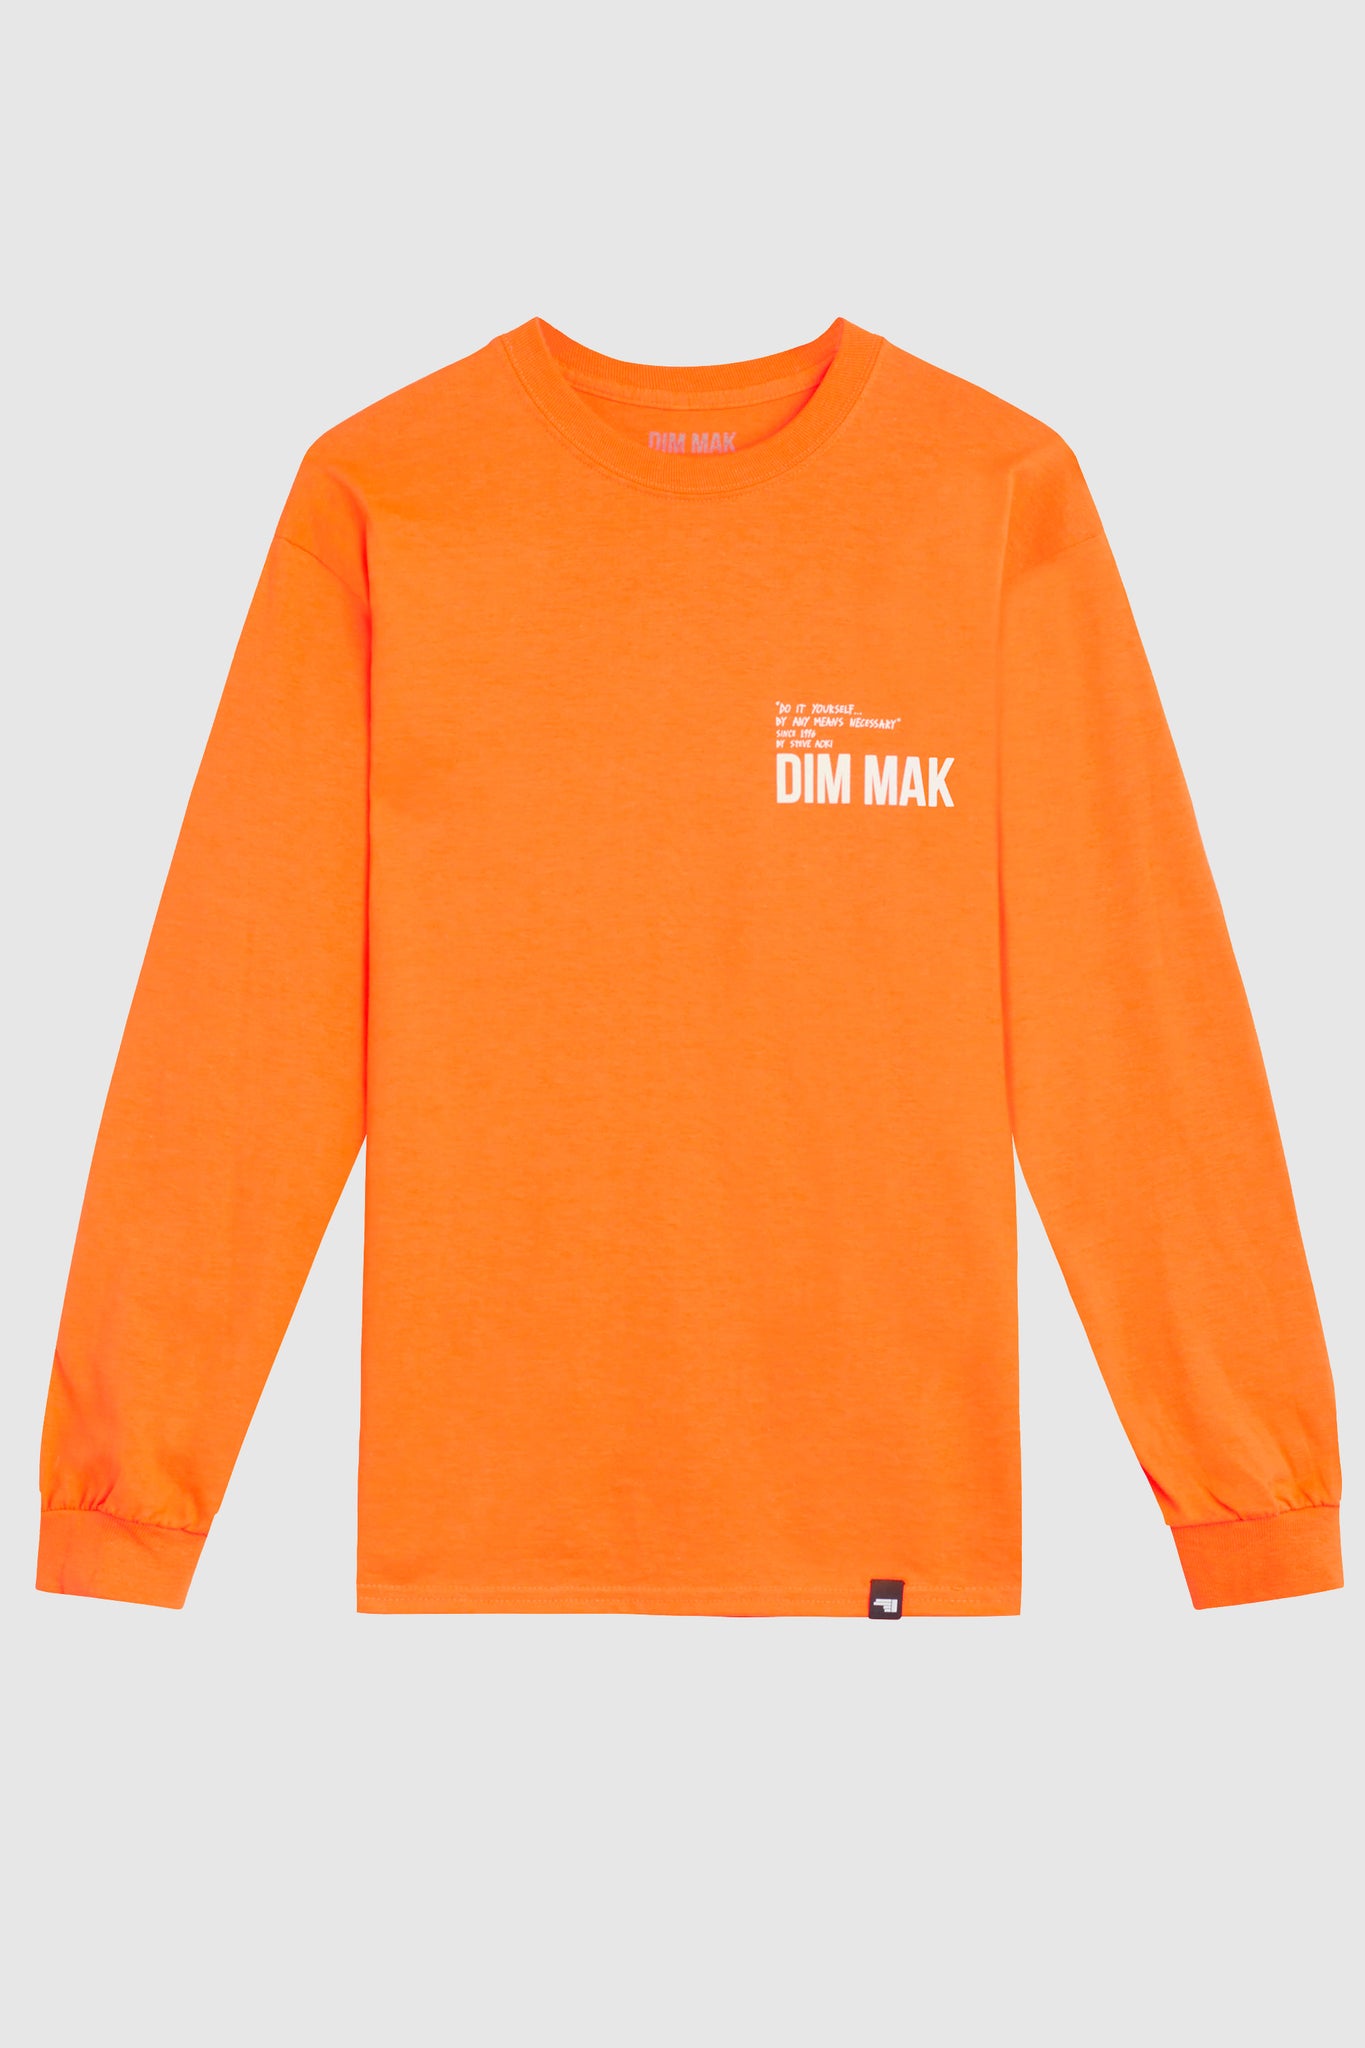 Dim Mak Essential 2.0 Long Sleeve Tee - Orange